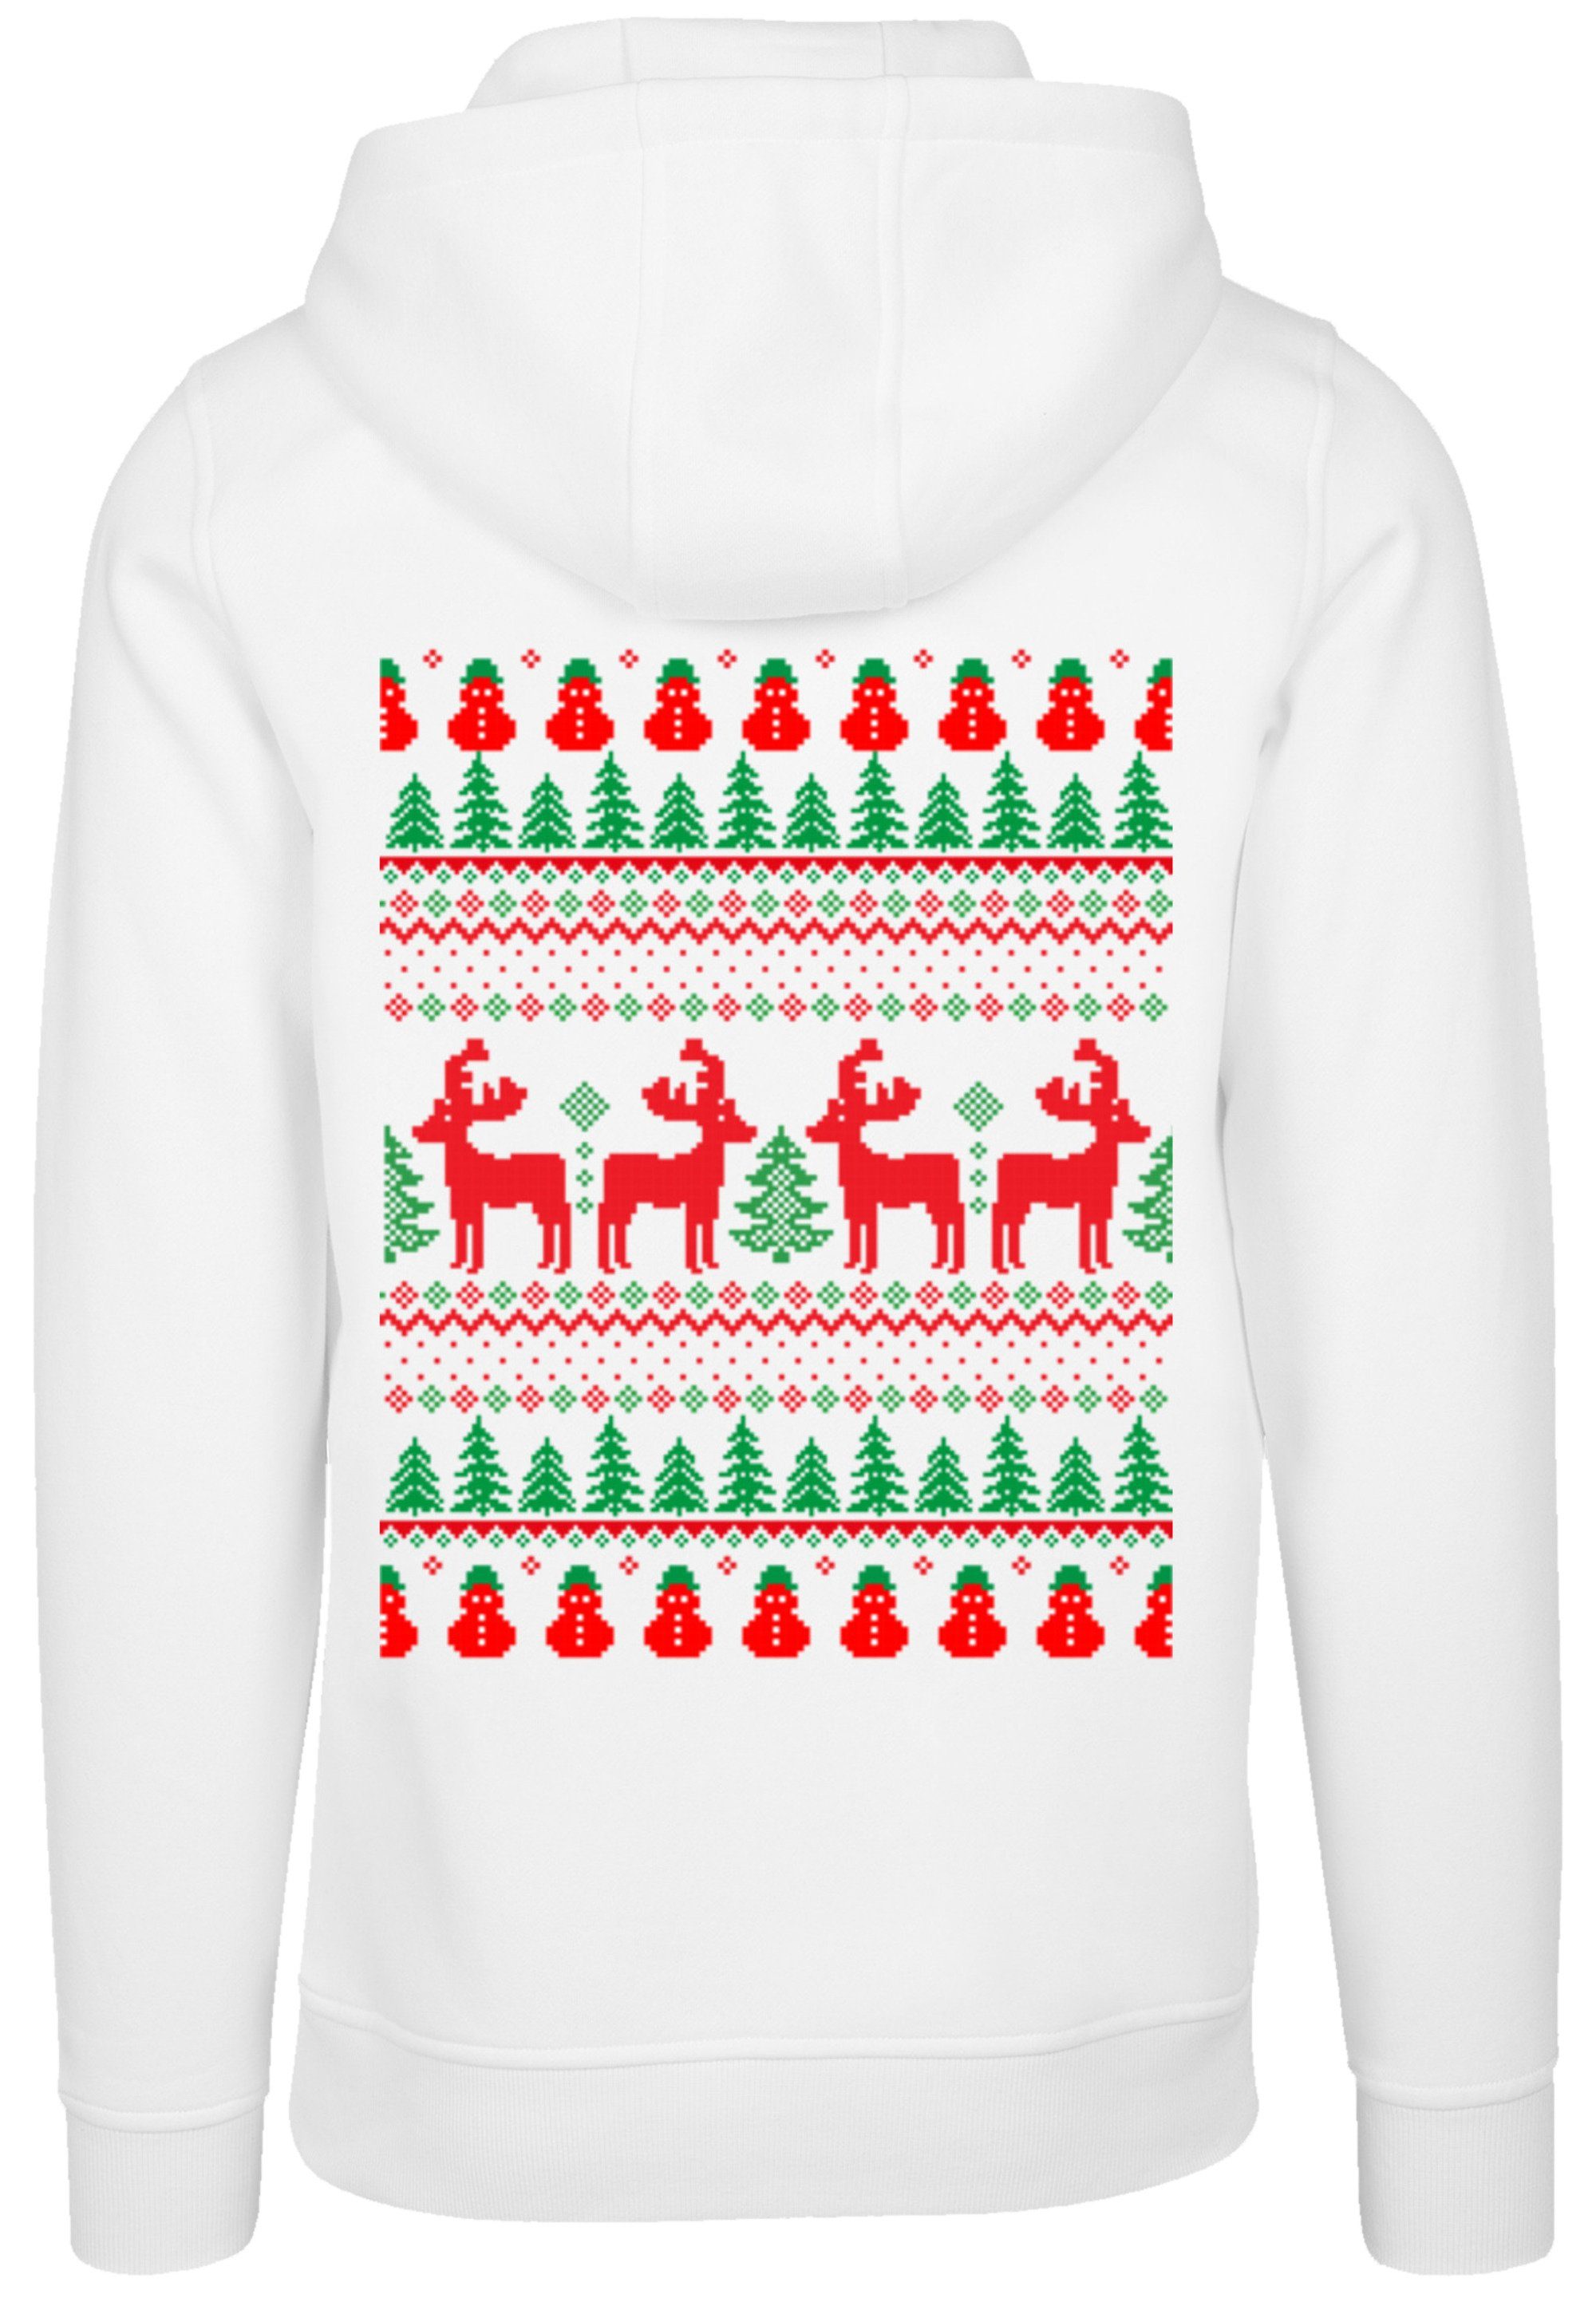 Weihnachten, Weihnachten Hoodie Premium Reindeers Geschenk Qualität, F4NT4STIC Christmas weiß